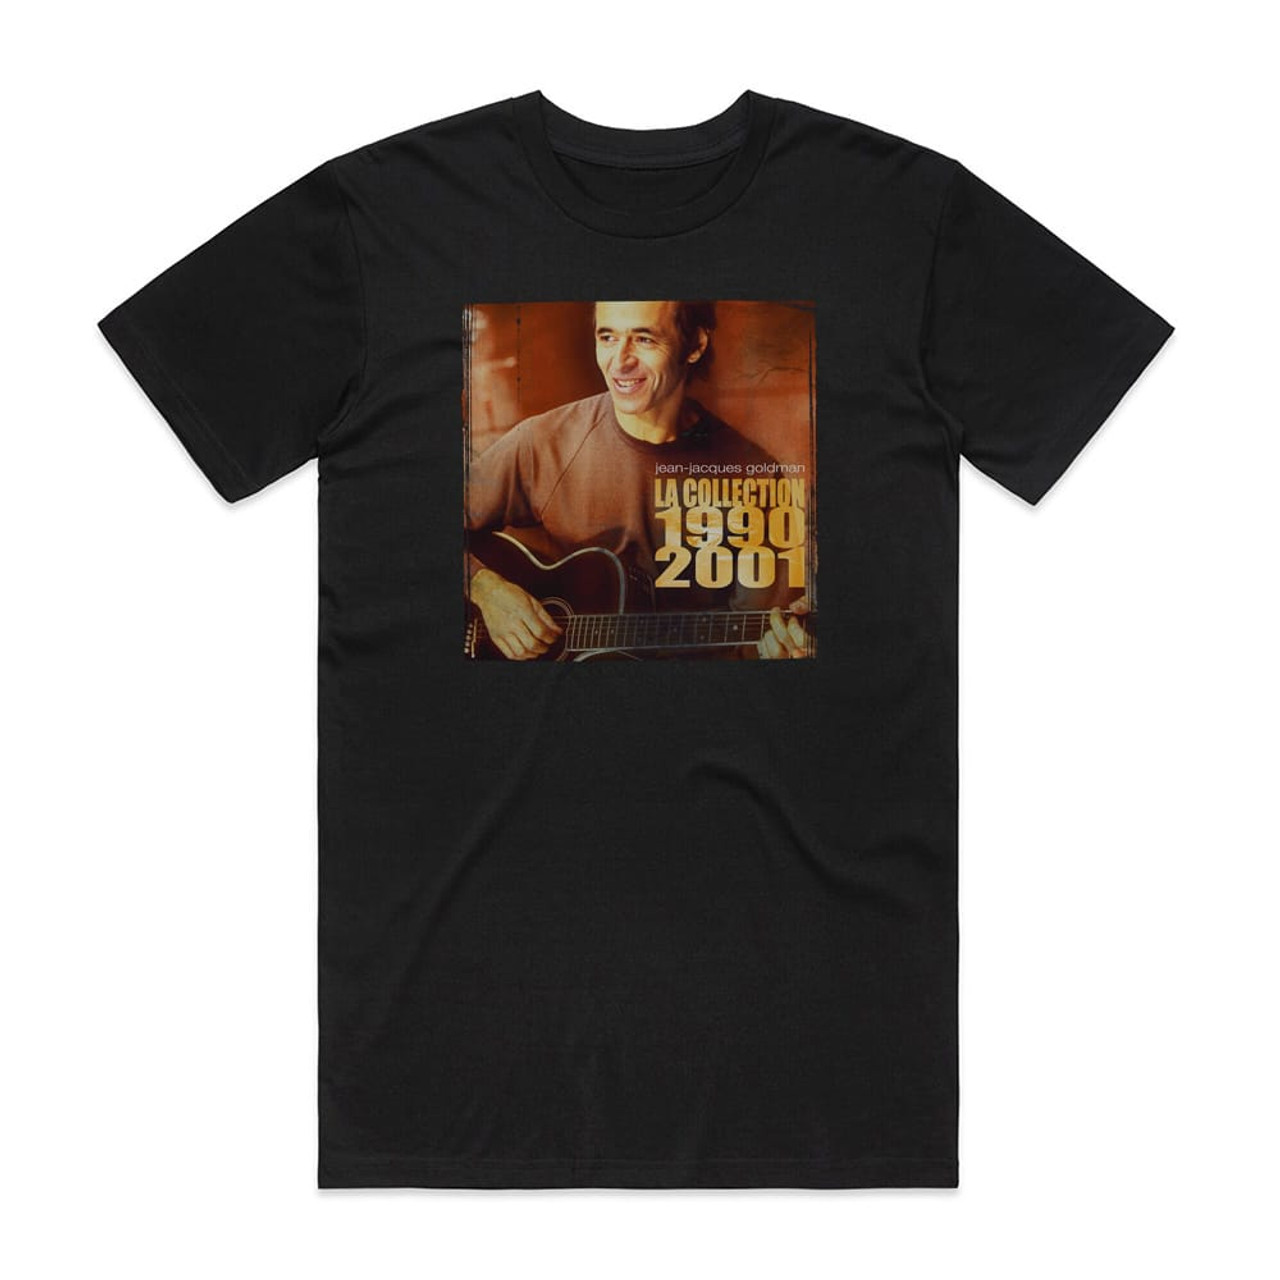 Jean-Jacques Goldman La Collection 1990 2001 Album Cover T-Shirt Black